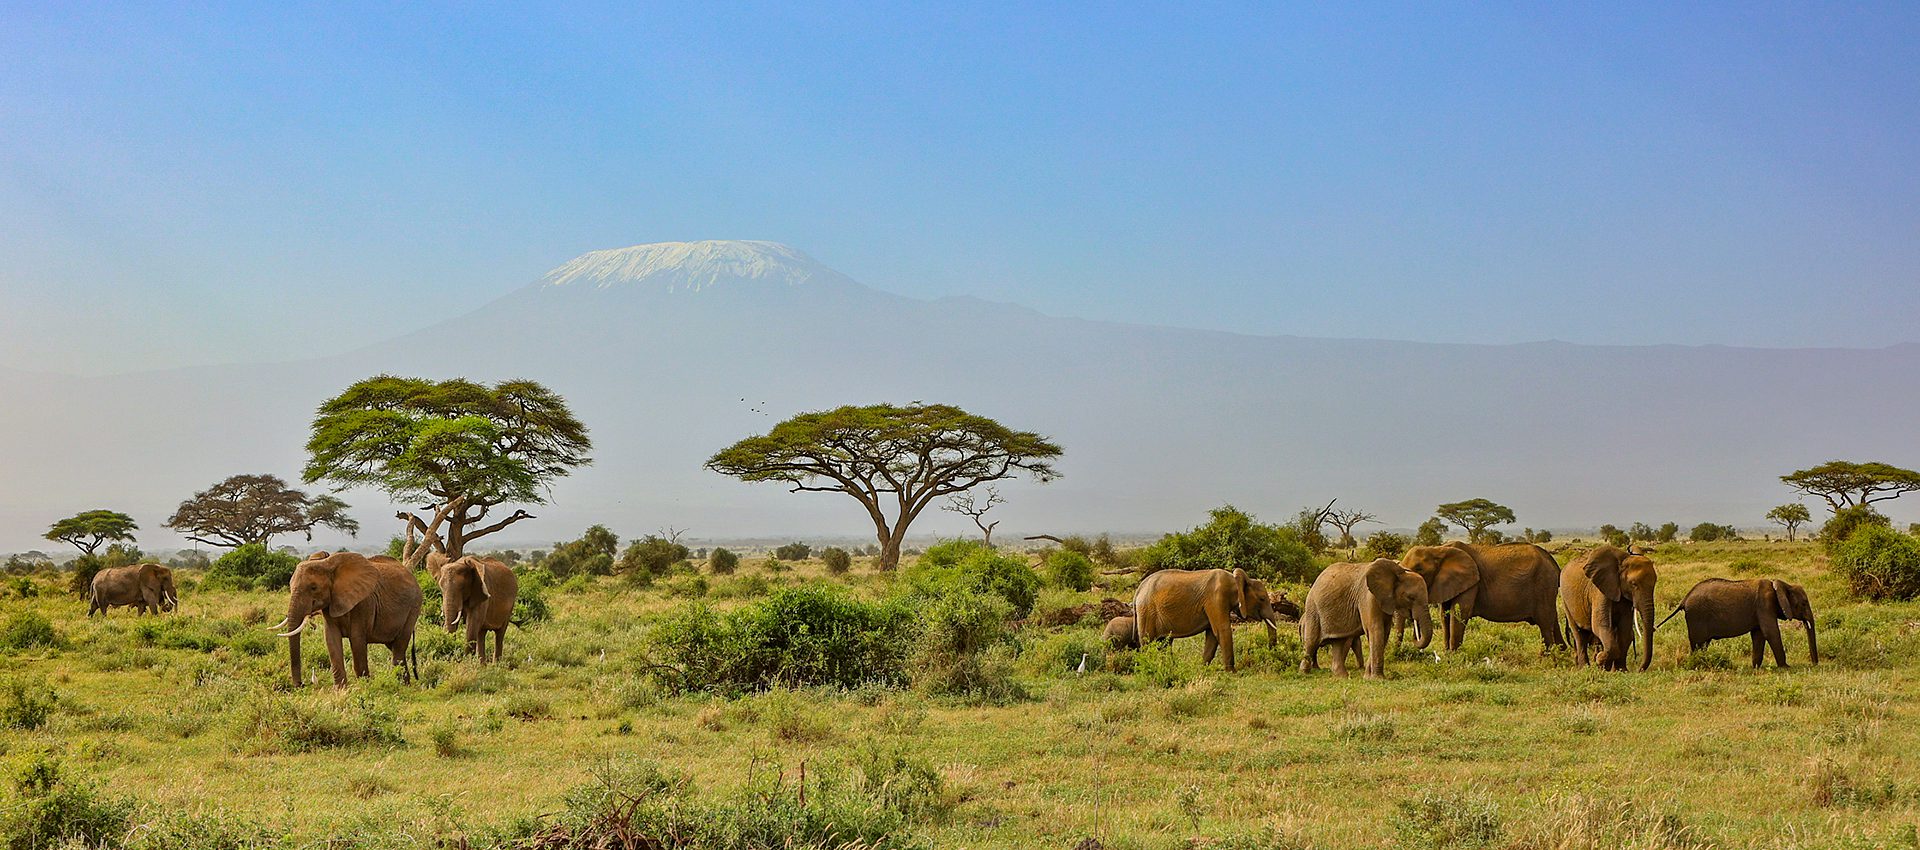 Motorreis Kenia-Tanzania 2022 Kilimanjaro 3˚03 South, Avontuurlijke motorreizen in Afrika.